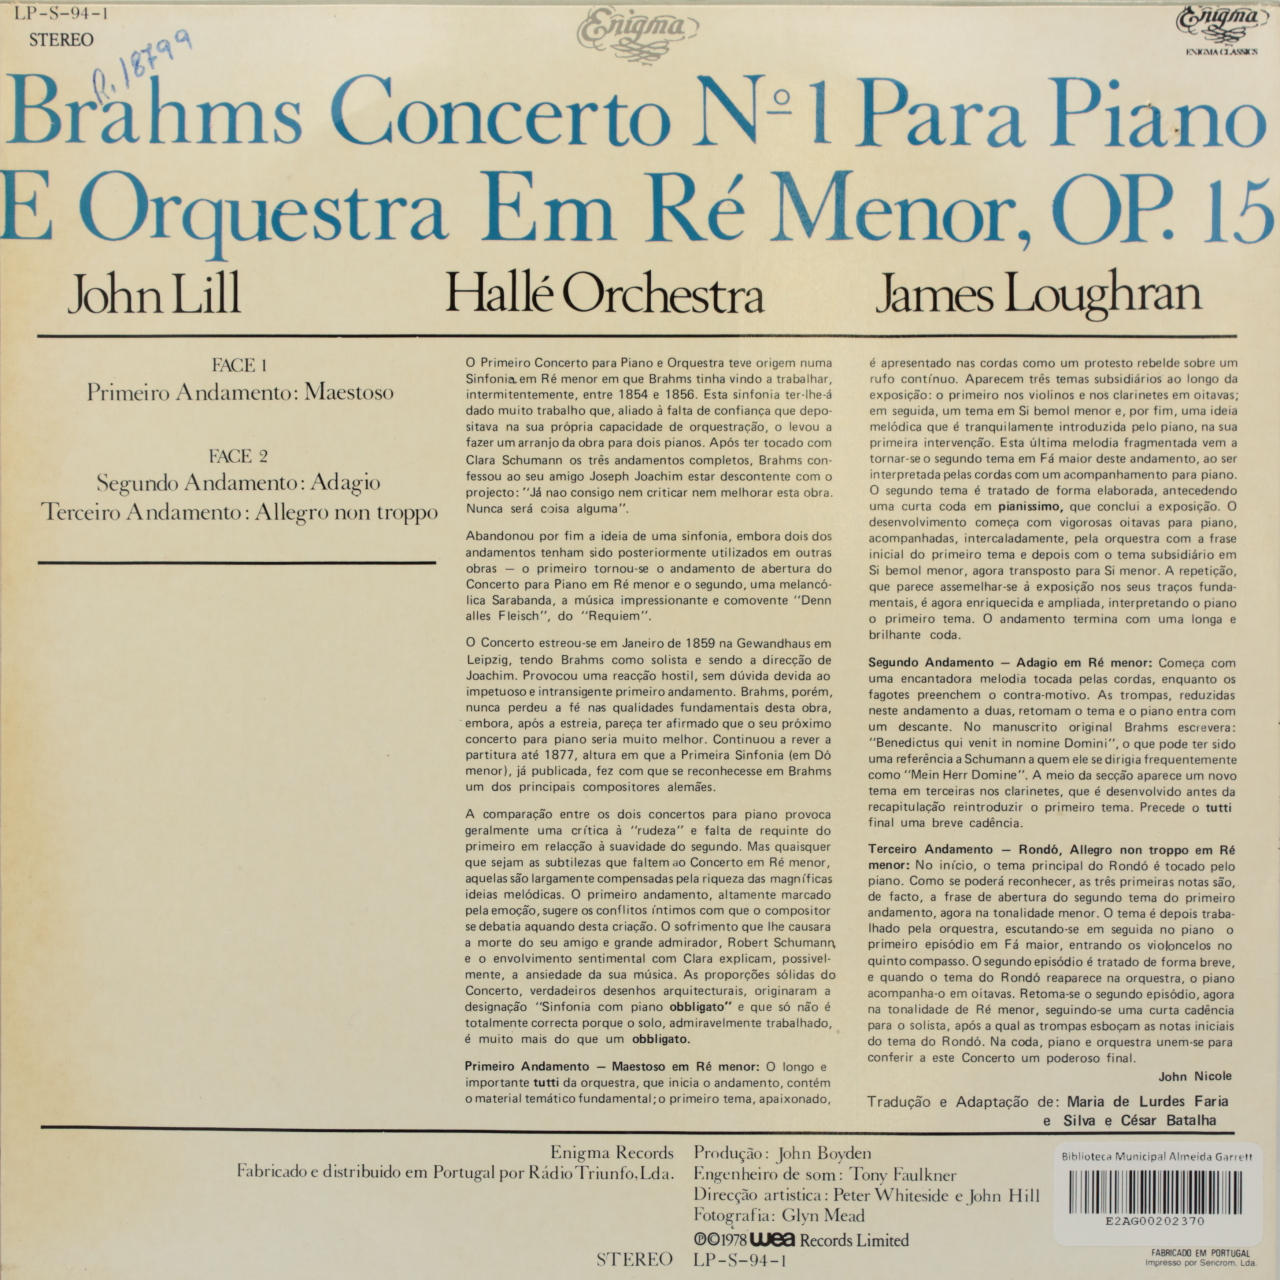 Brahms: Concerto Nº 1 para piano e orquestra em Ré Menor, Op. 15